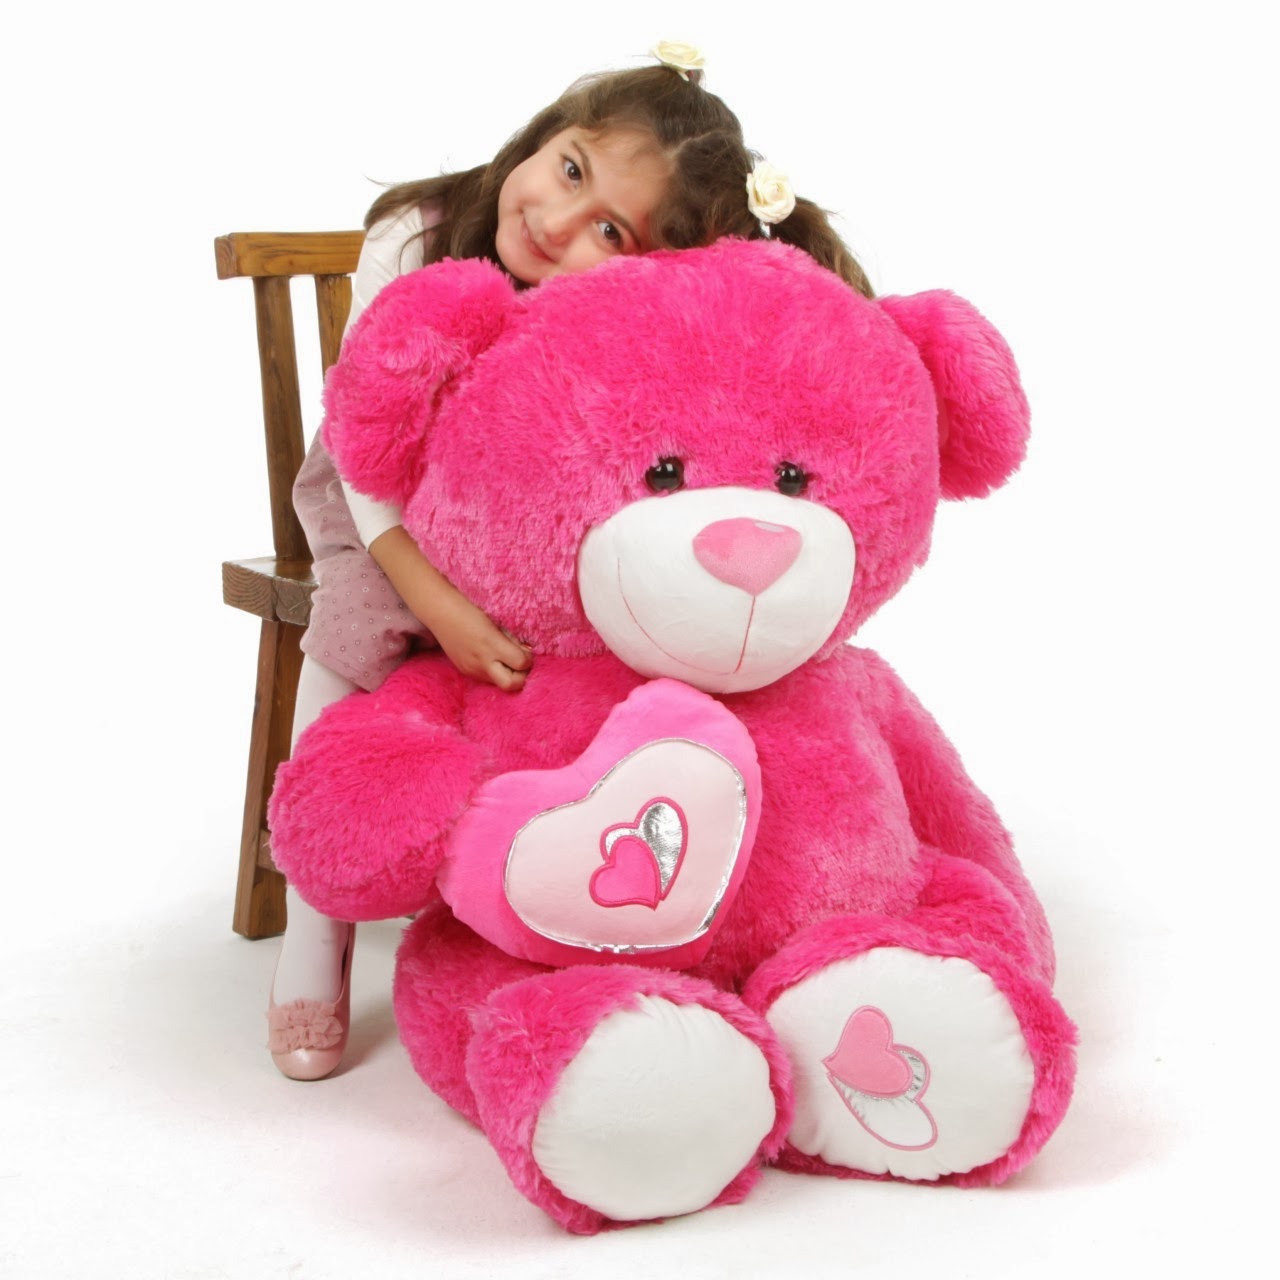 ChaCha Big Love, BIG hot pink teddy bear